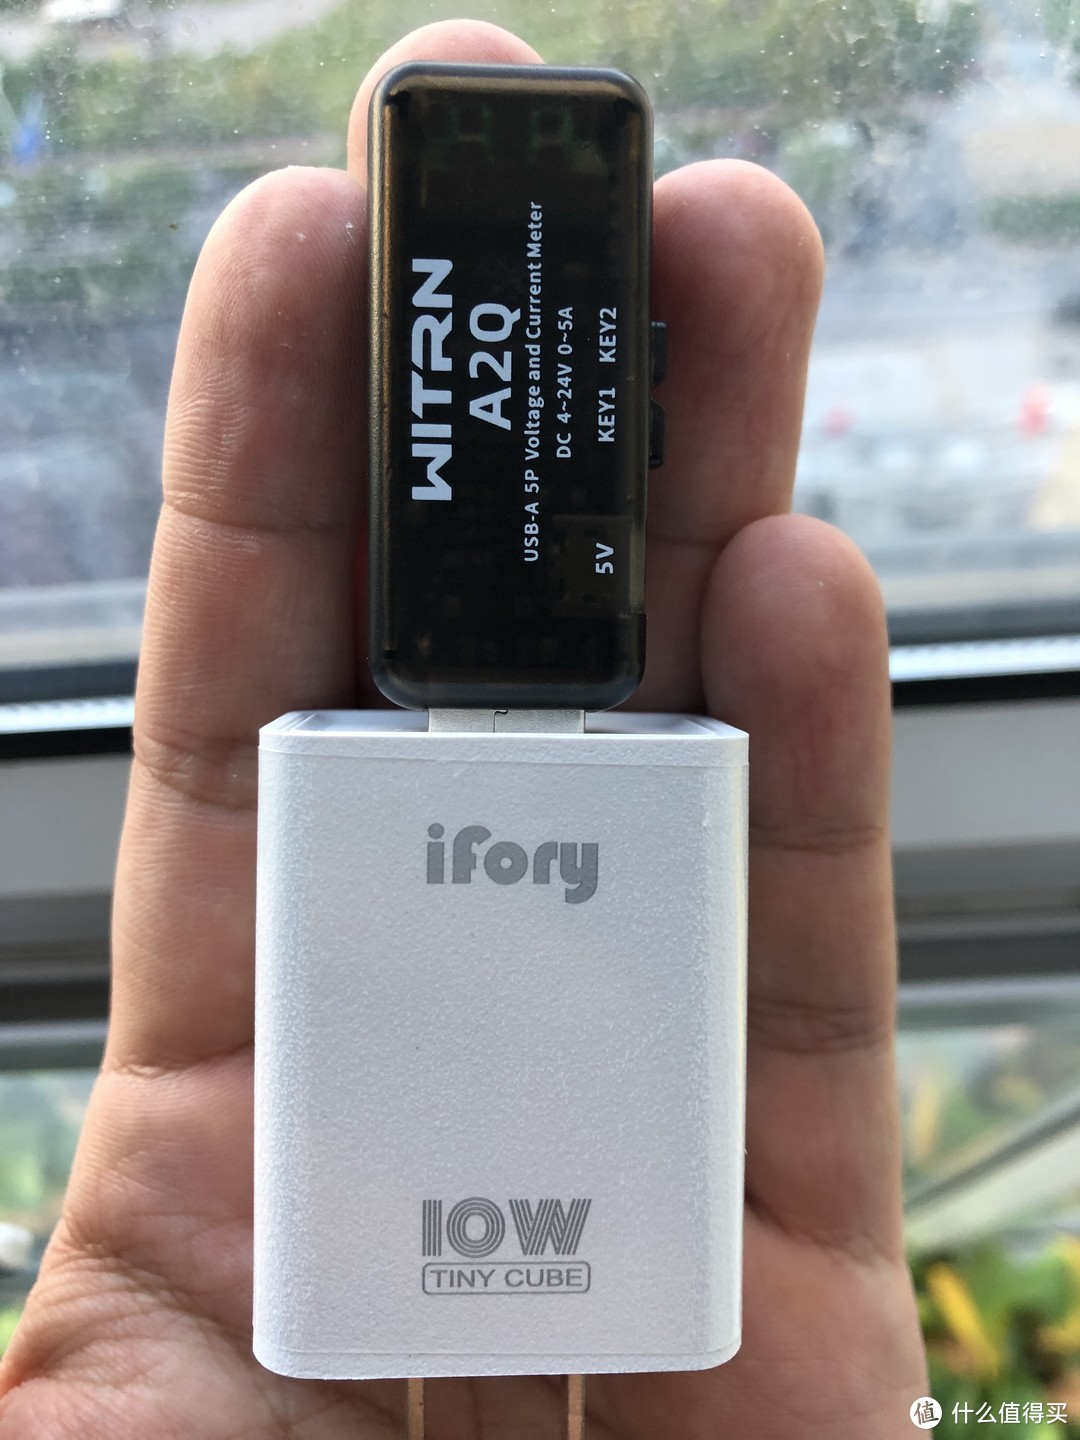 ifory 安福瑞10W充电器非专业评测和是否支持苹果“快充”解惑